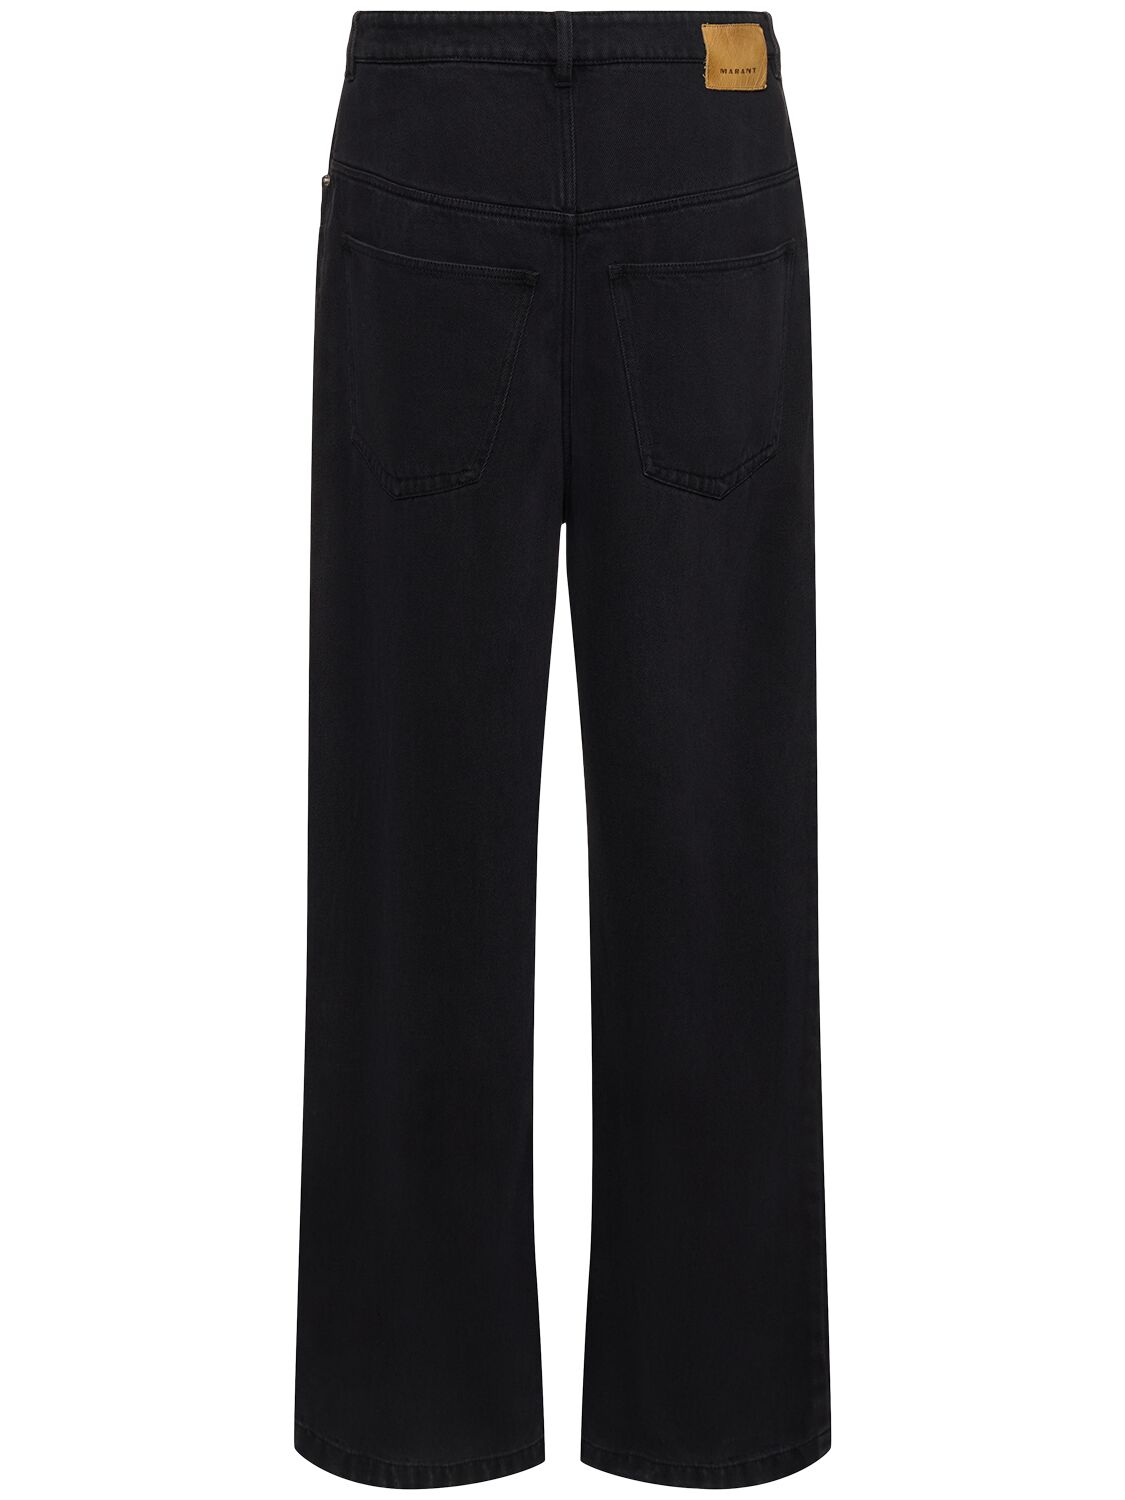 Shop Marant Teren Fluid Lyocell & Cotton Wide Jeans In Black